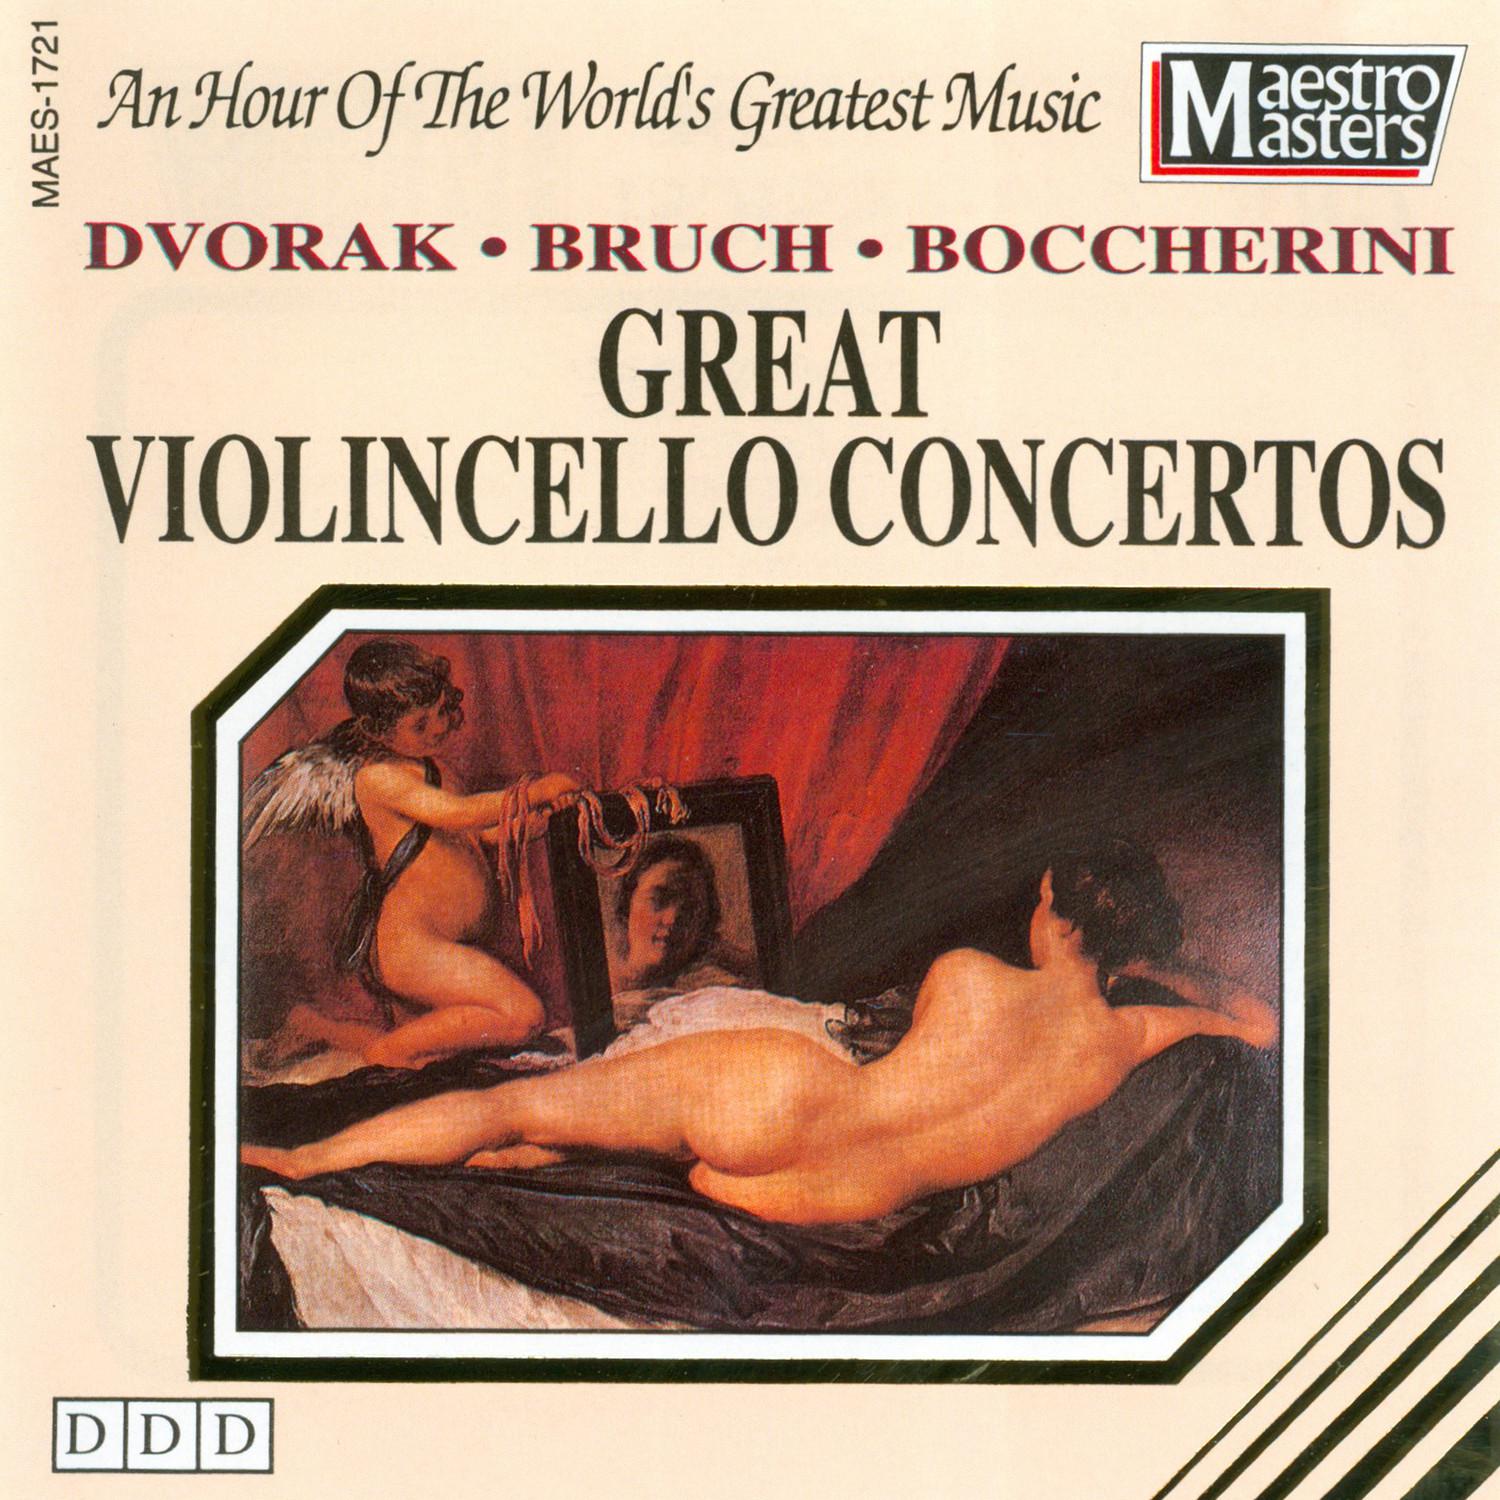 Concerto for Violincello and Orchestra Op. 34 B-Flat Major - Adagio